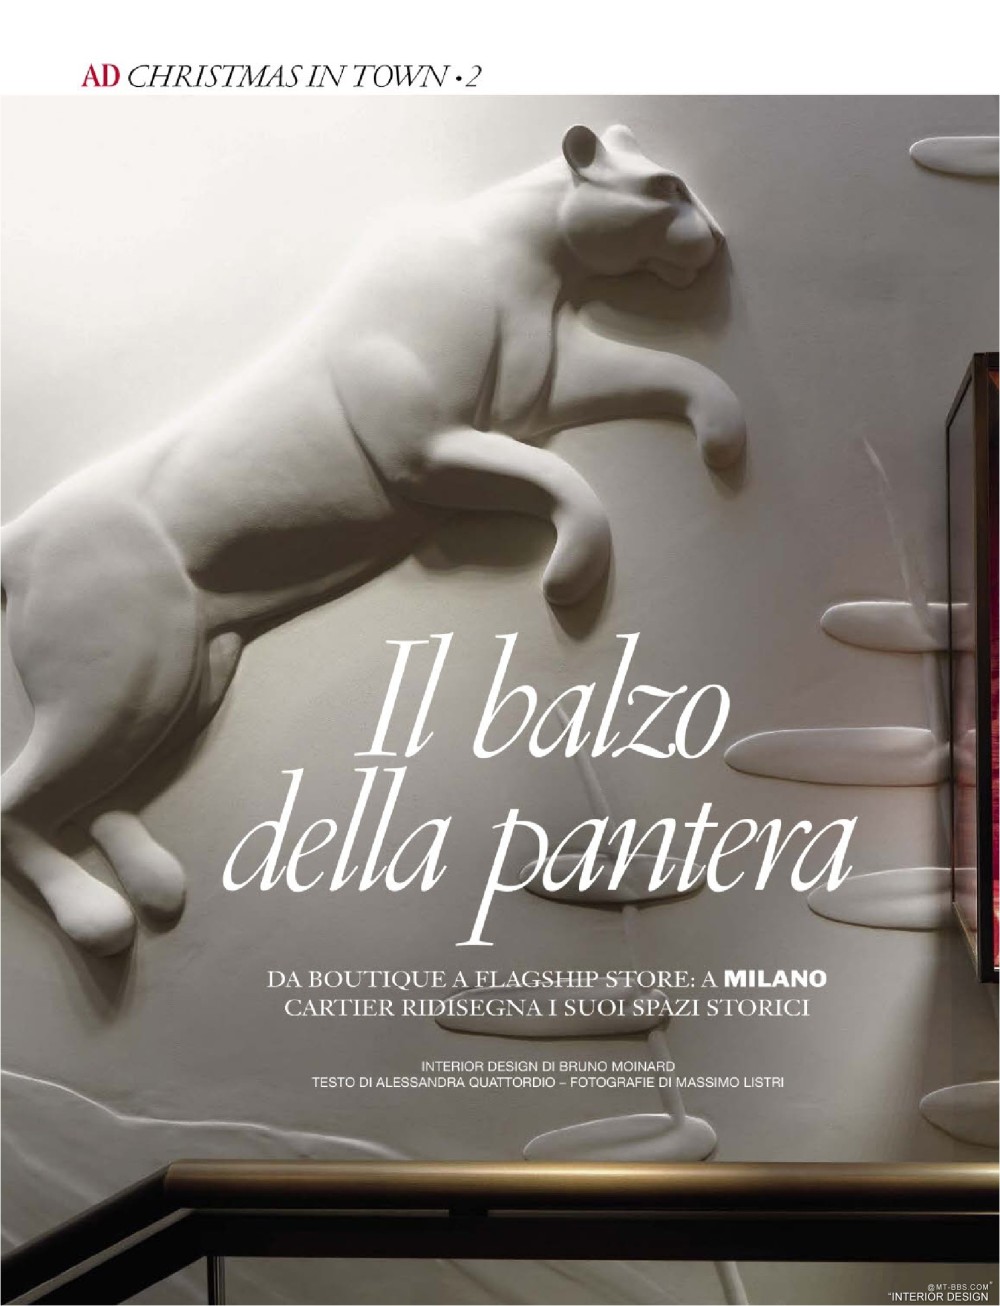 意大利AD 杂志 2012年全年JPG高清版本 全免（上传完毕）_0182.jpg